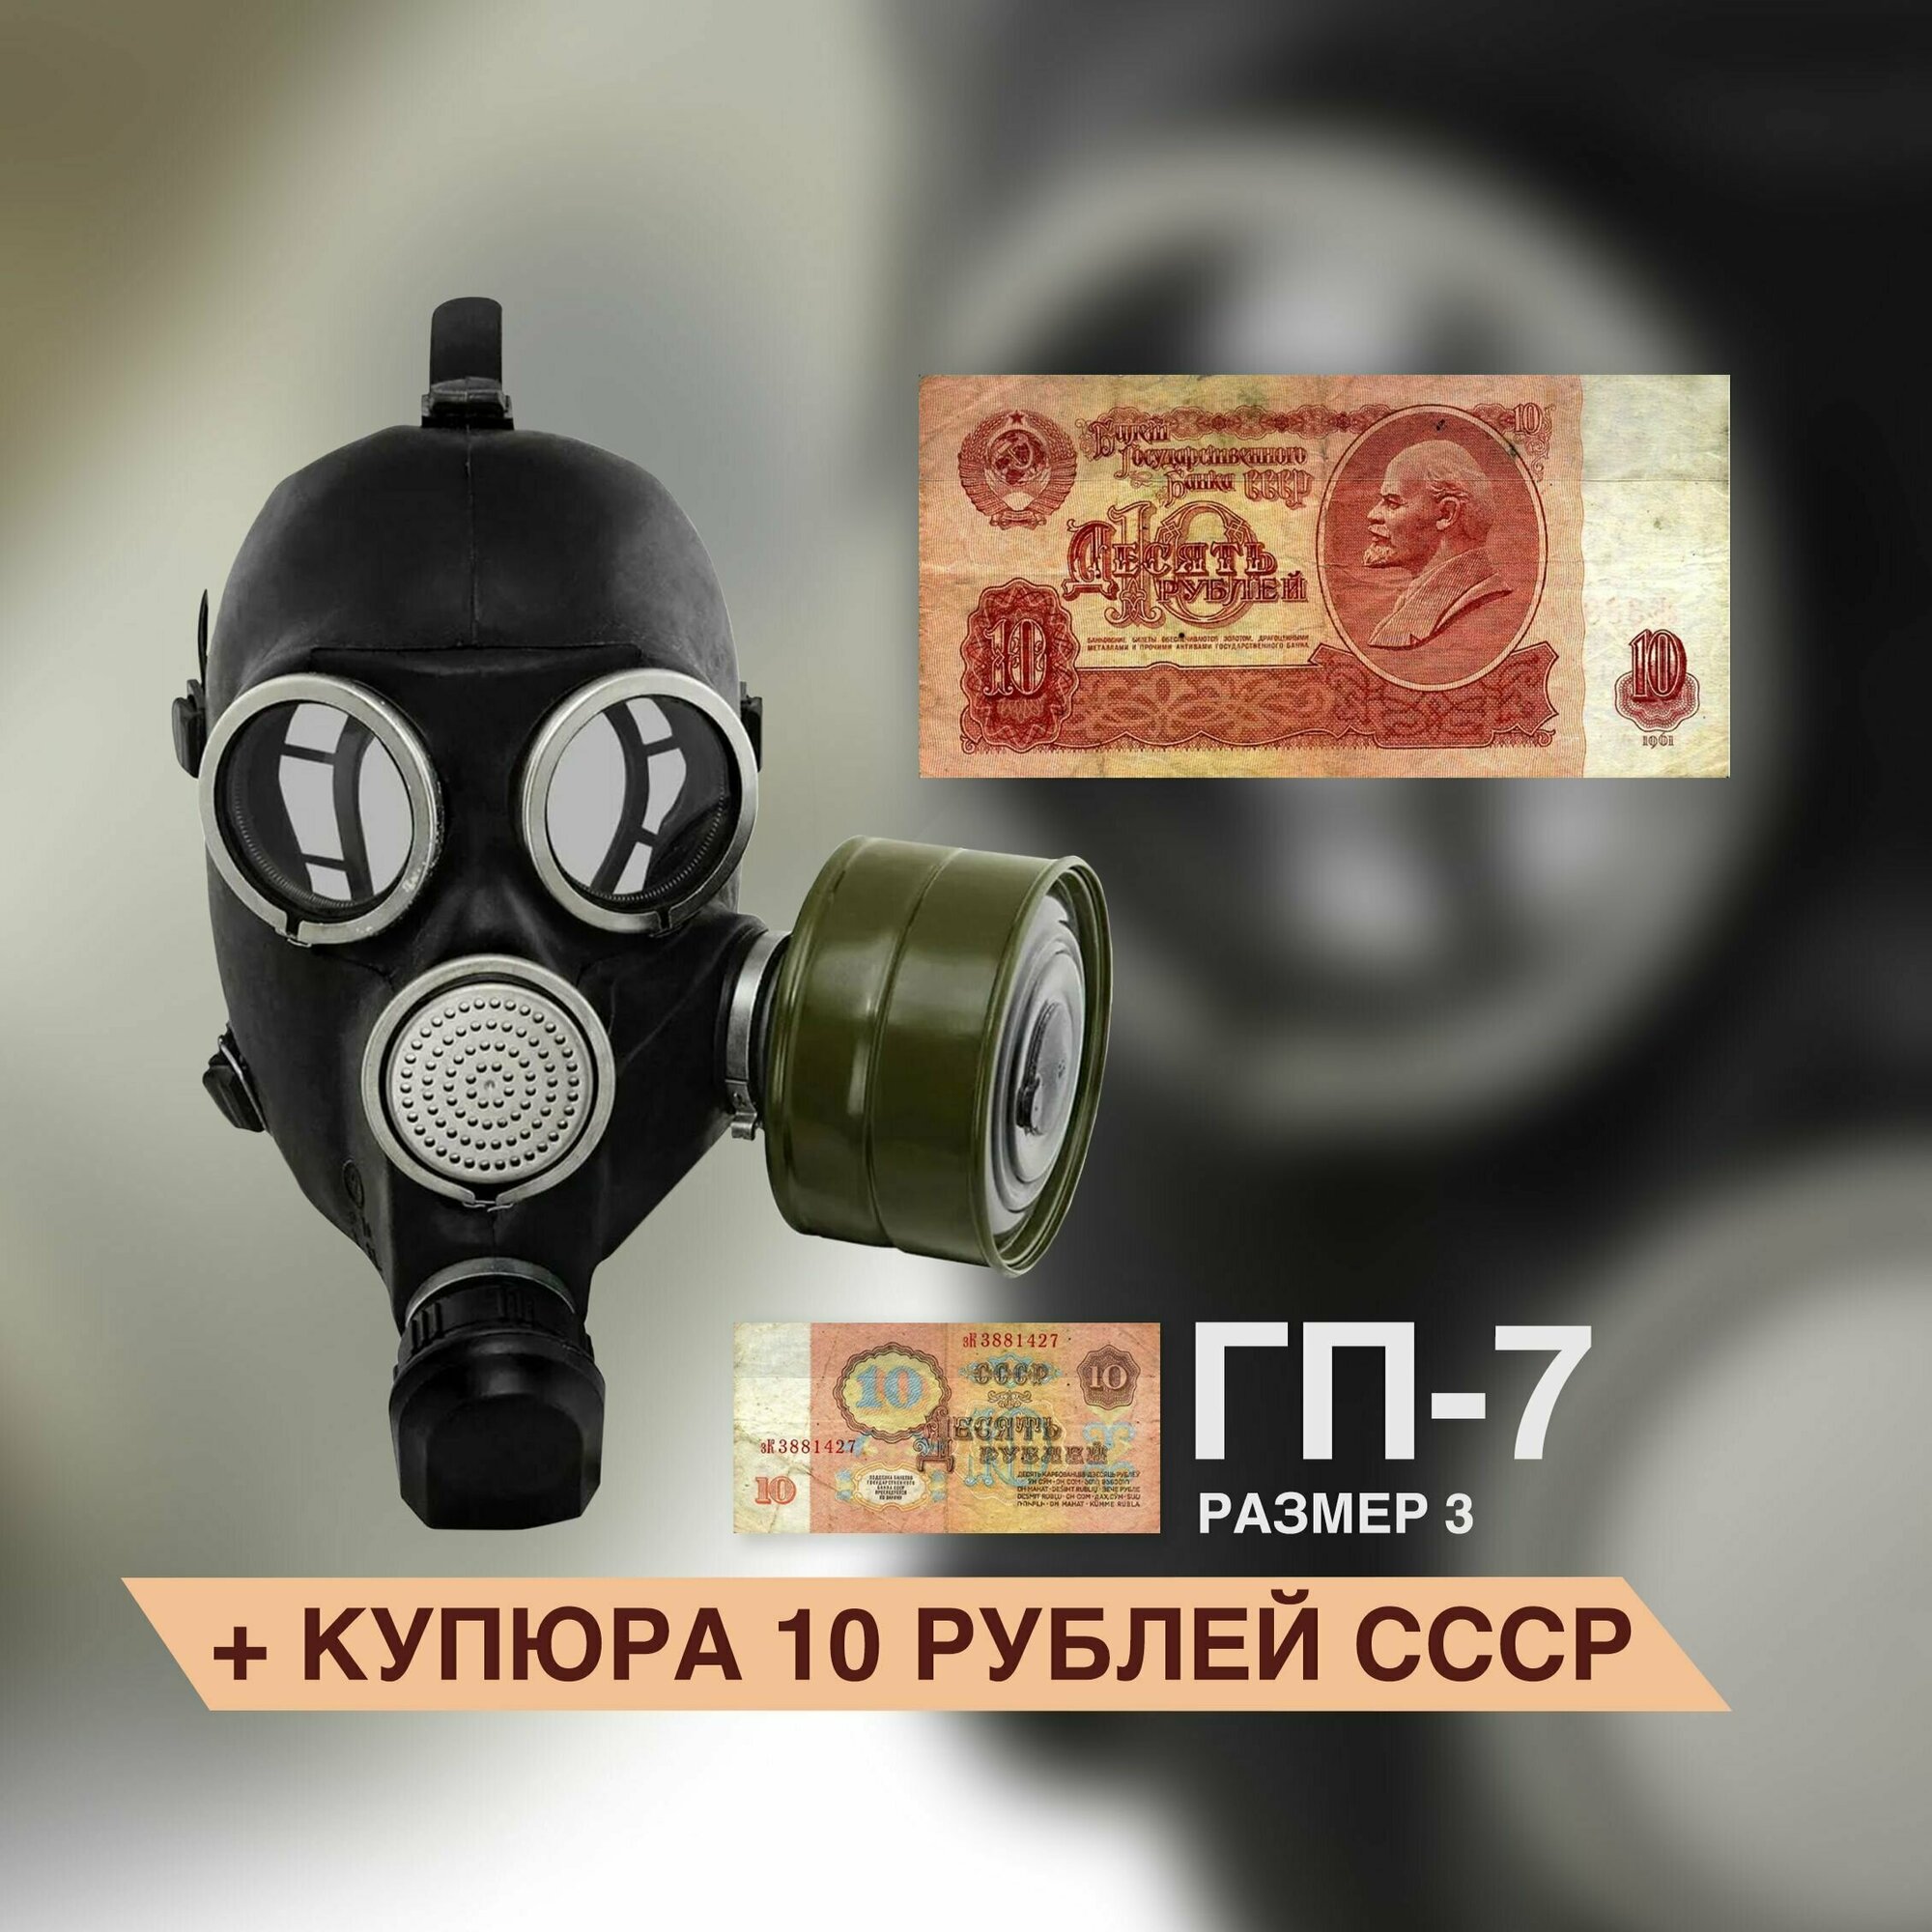 Противогаз ГП-7 (с купюрой 10 рублей)